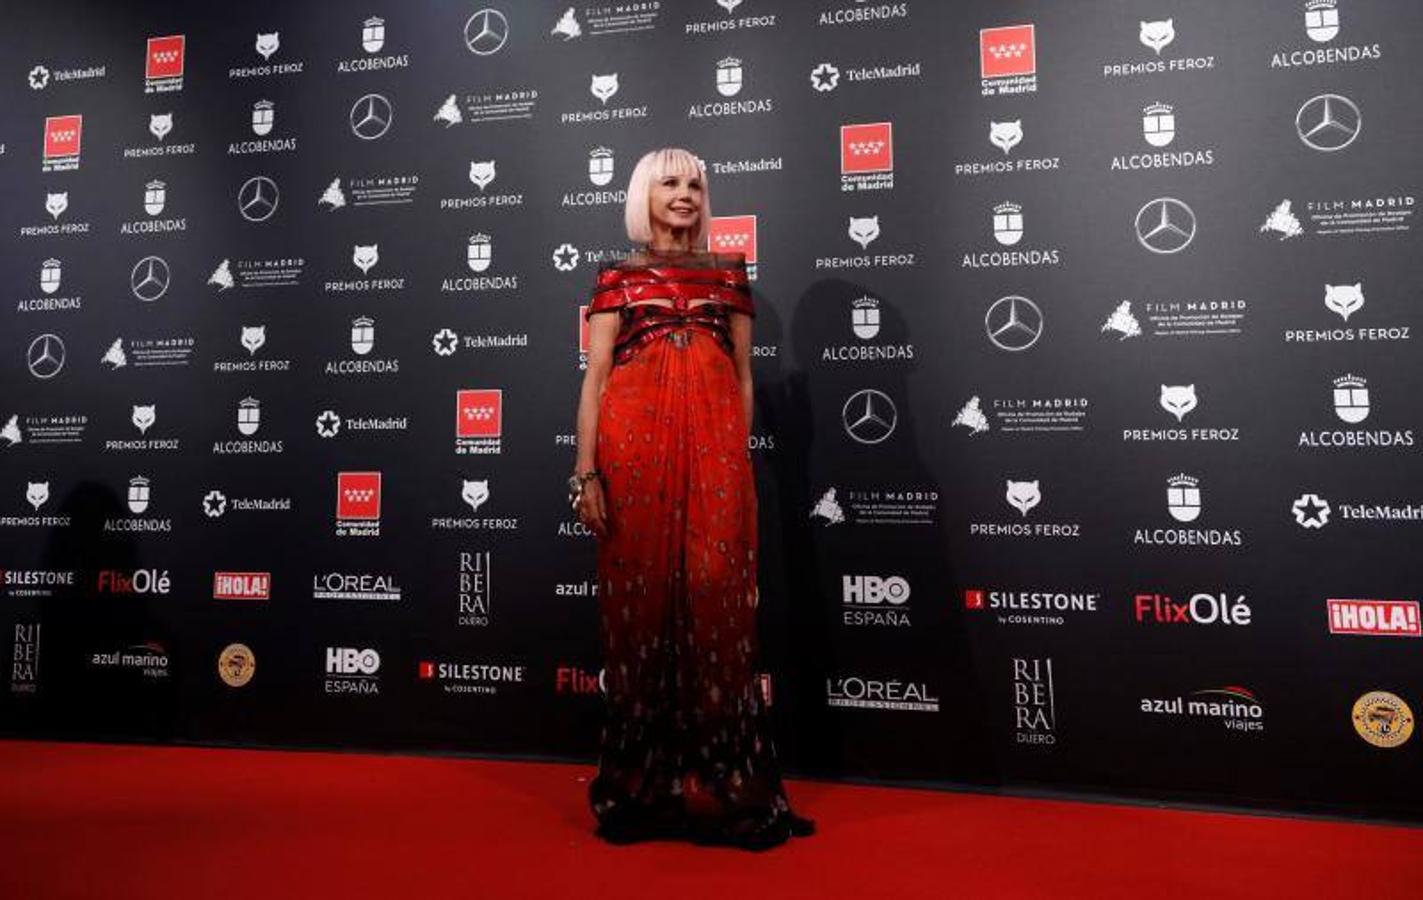 Victoria Abril siempre se atreve con los estilismos más llamativos, como este en tonos rojos con el que volvió a sorprender en estos premios.